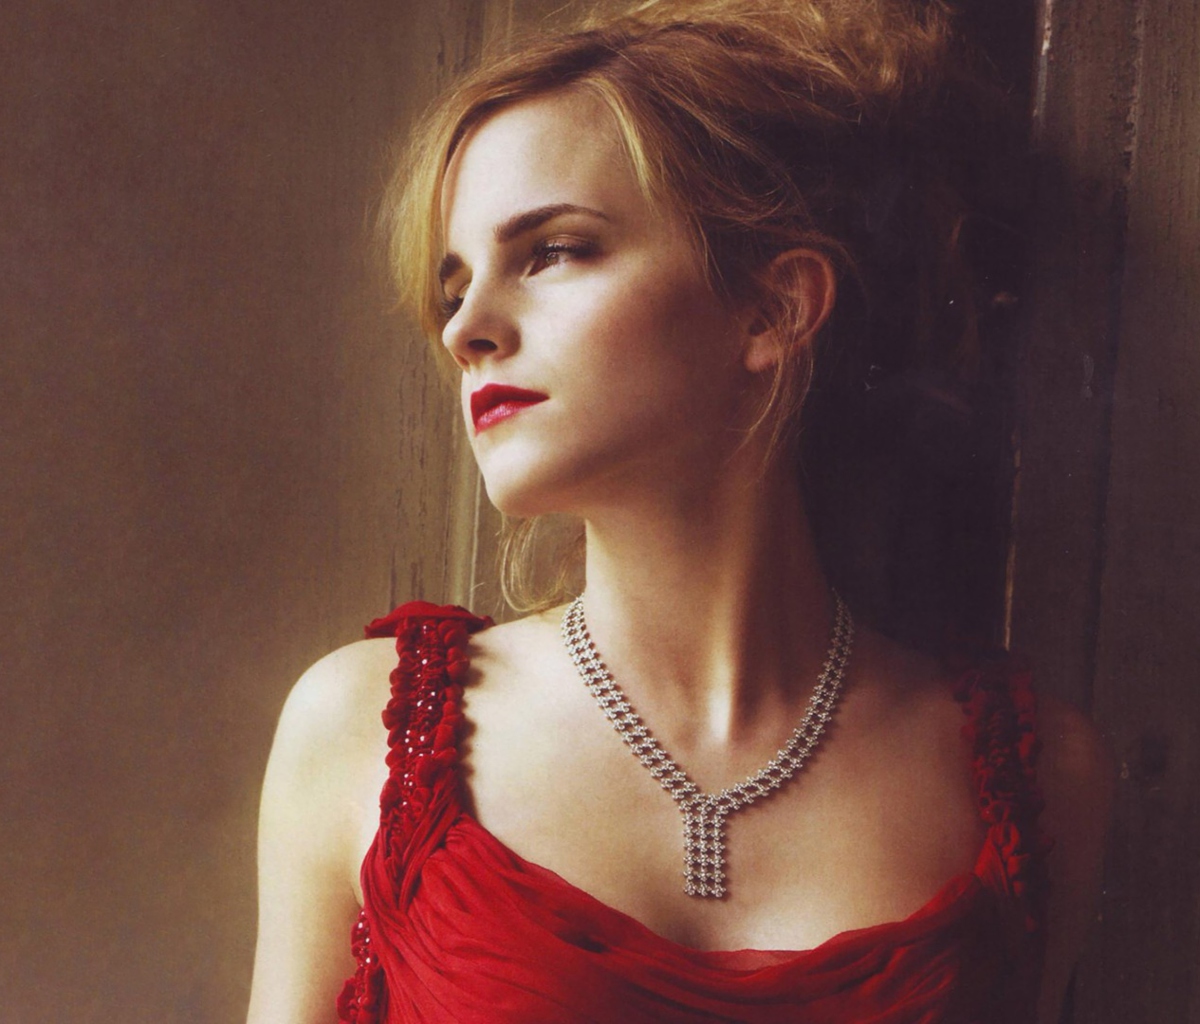 Das Emma Watson In Red Dress Wallpaper 1200x1024